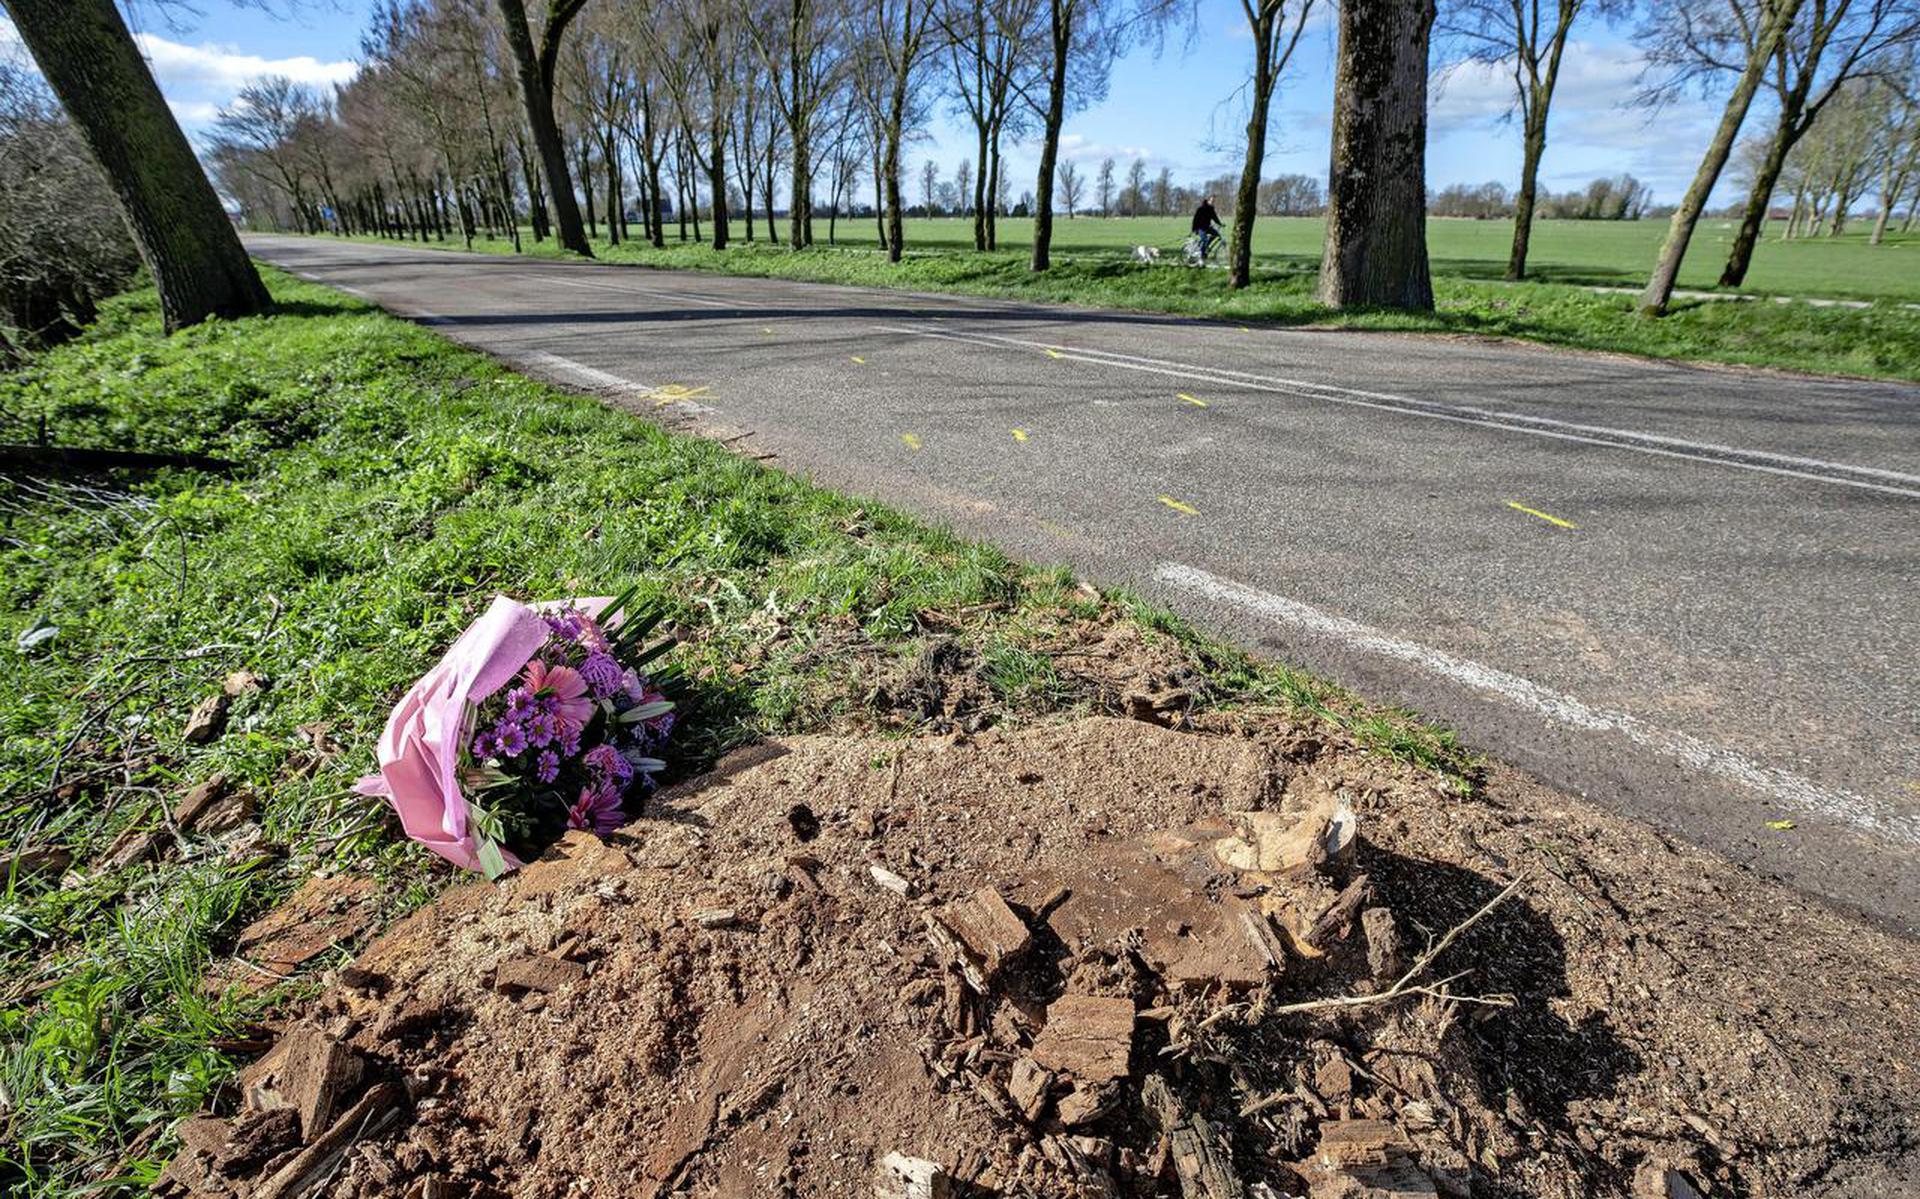 Rondom de plek worden inmiddels massaal bloemen neergelegd na het verschrikkelijke verkeersongeval waarbij vier mannen omkwamen.